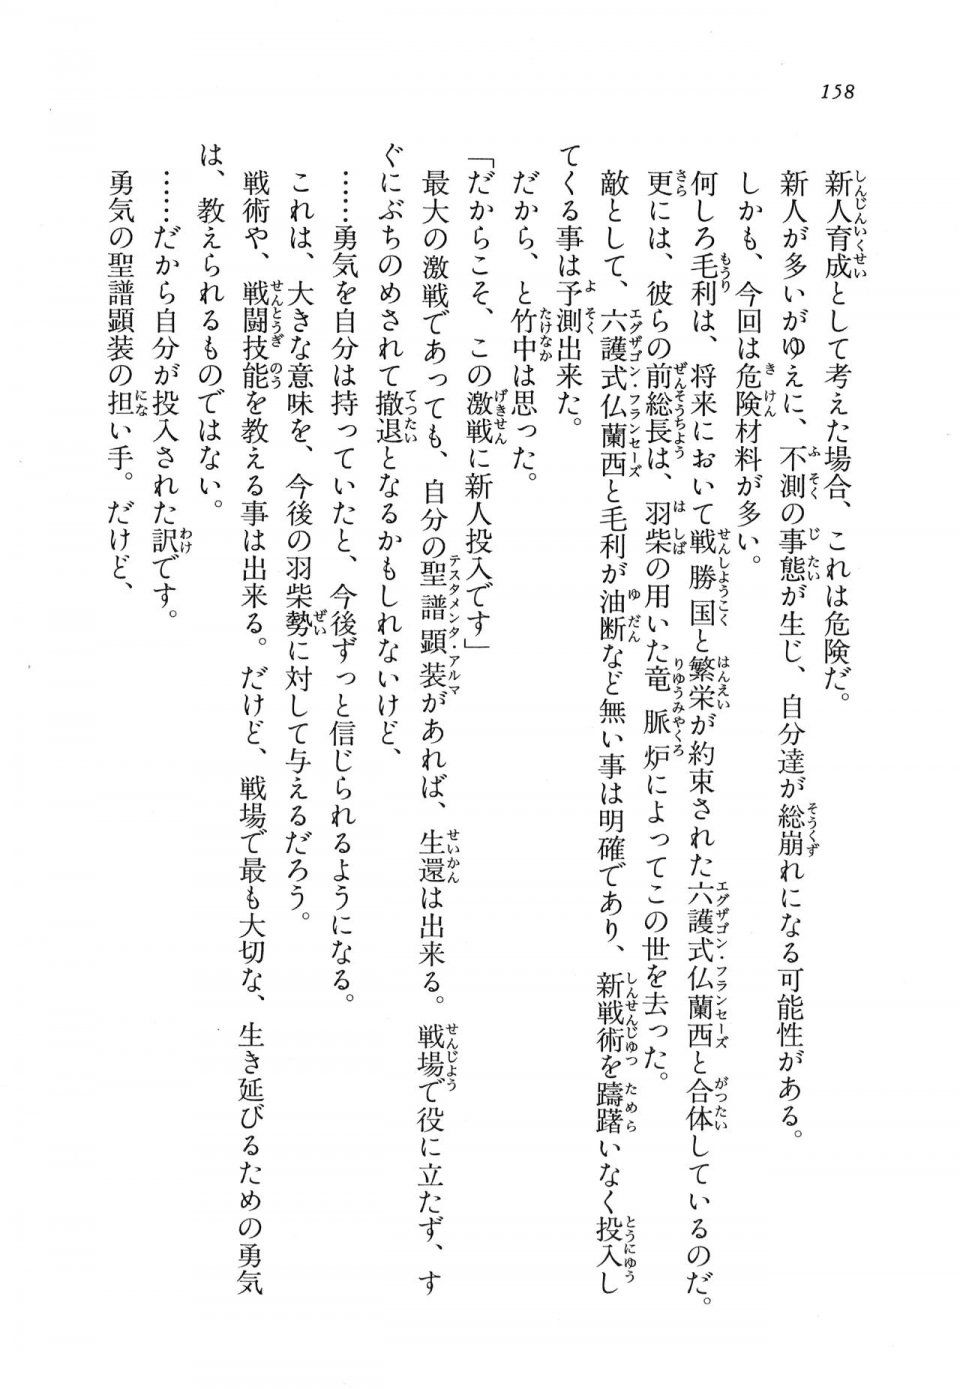 Kyoukai Senjou no Horizon LN Vol 11(5A) - Photo #158